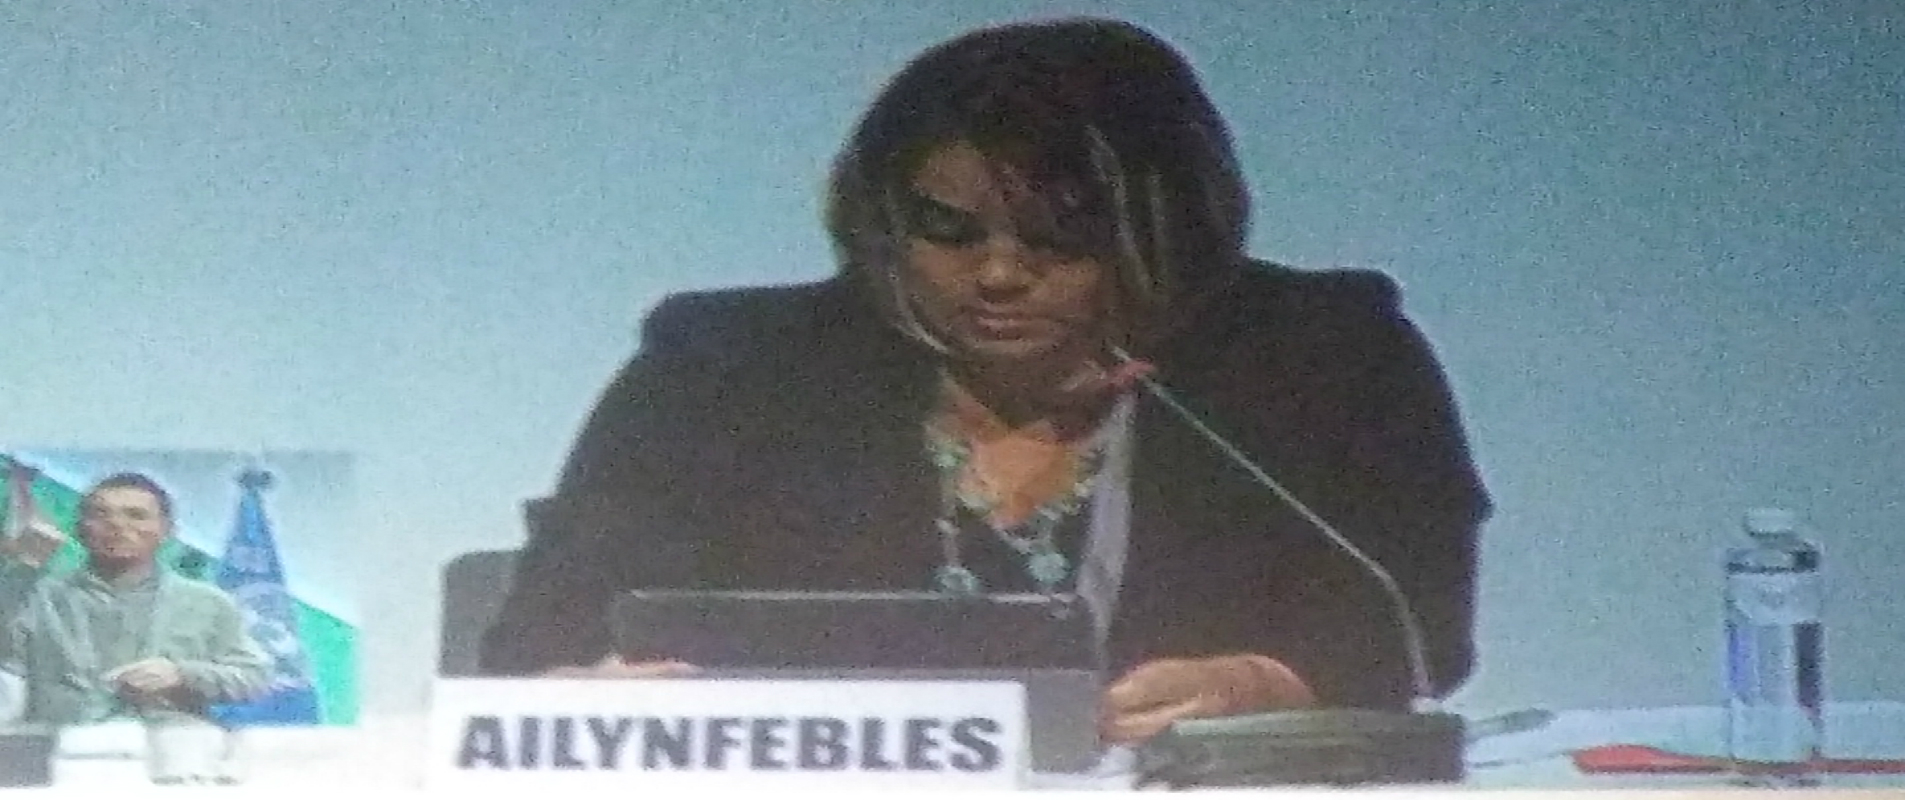 Intervención de Ailyn Febles, presidenta de la Unión de Informáticos de Cuba en Foro sobre desarrollo inclusivo y sostenible en la sala principal del Foro Global de Internet 2016.